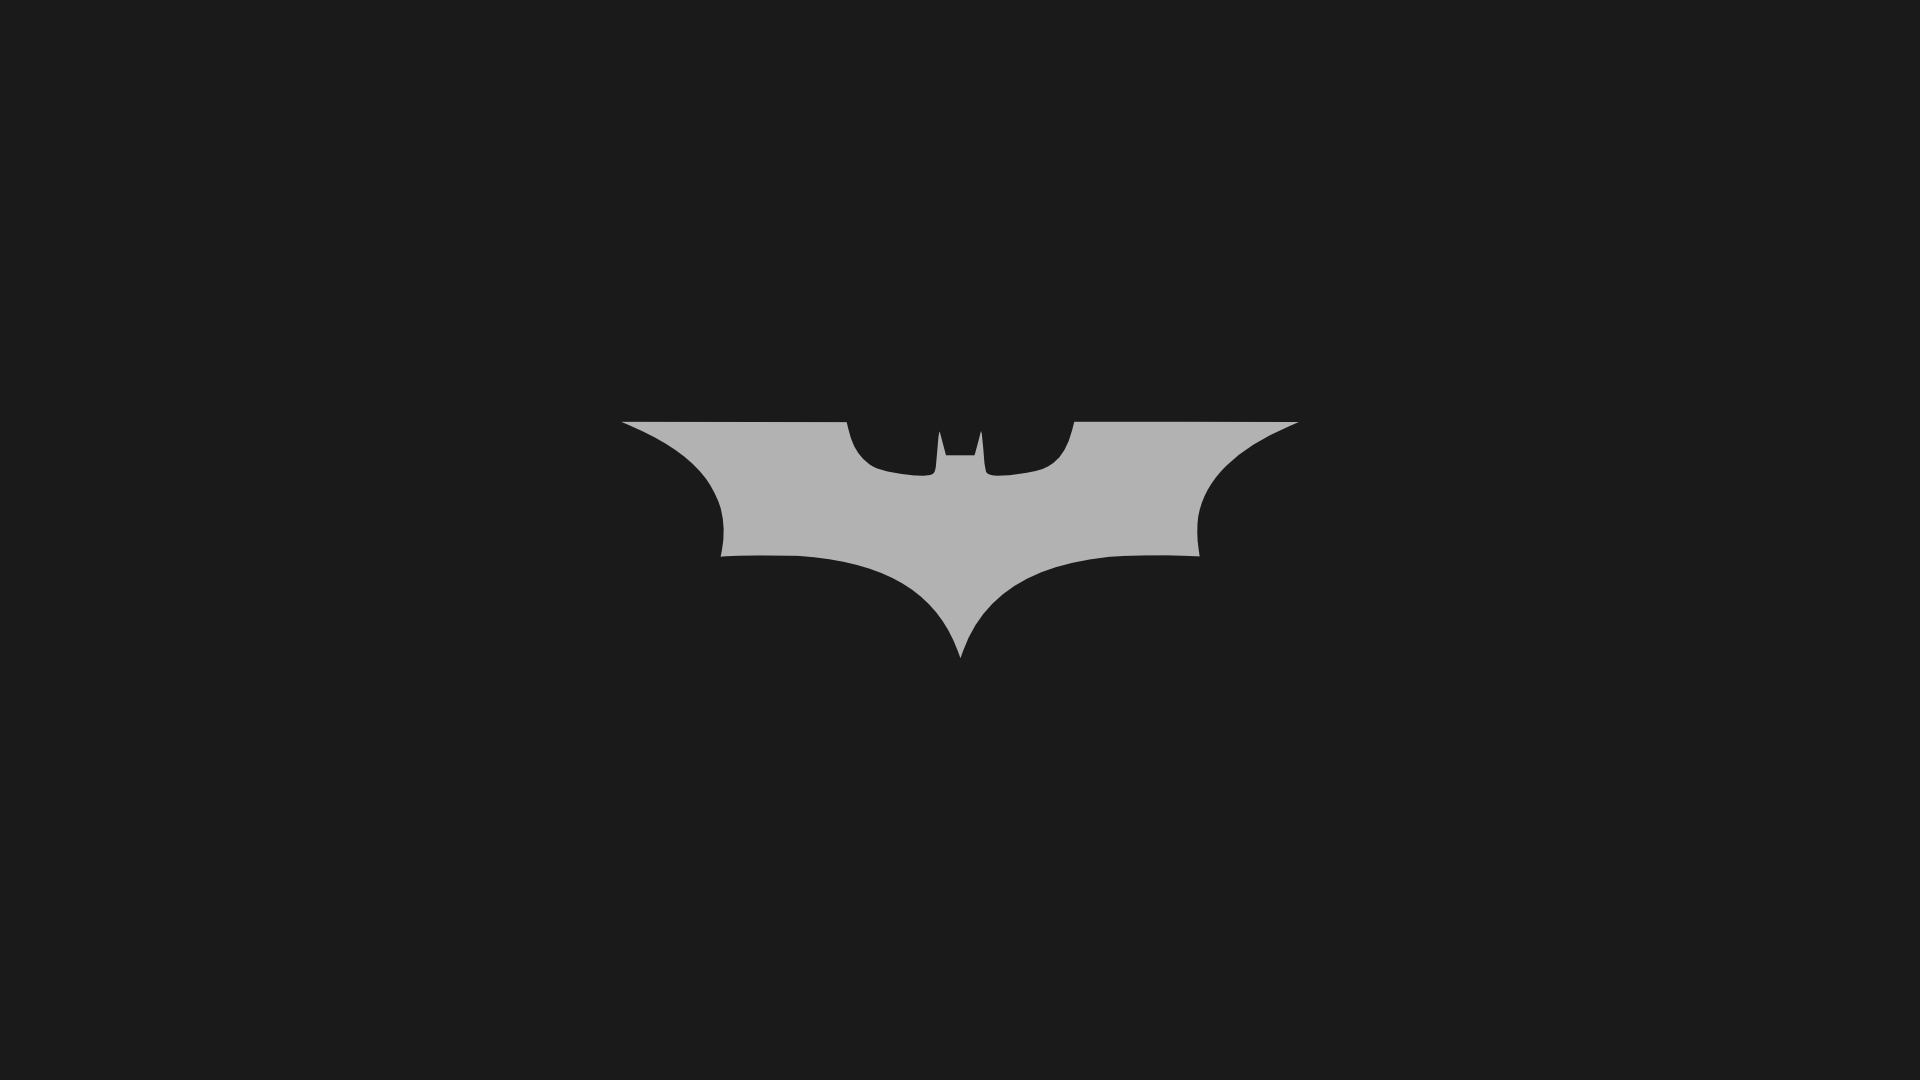  Batman Logo Iphone Wallpaper   batman logo wallpaper 6   Anglerzcom